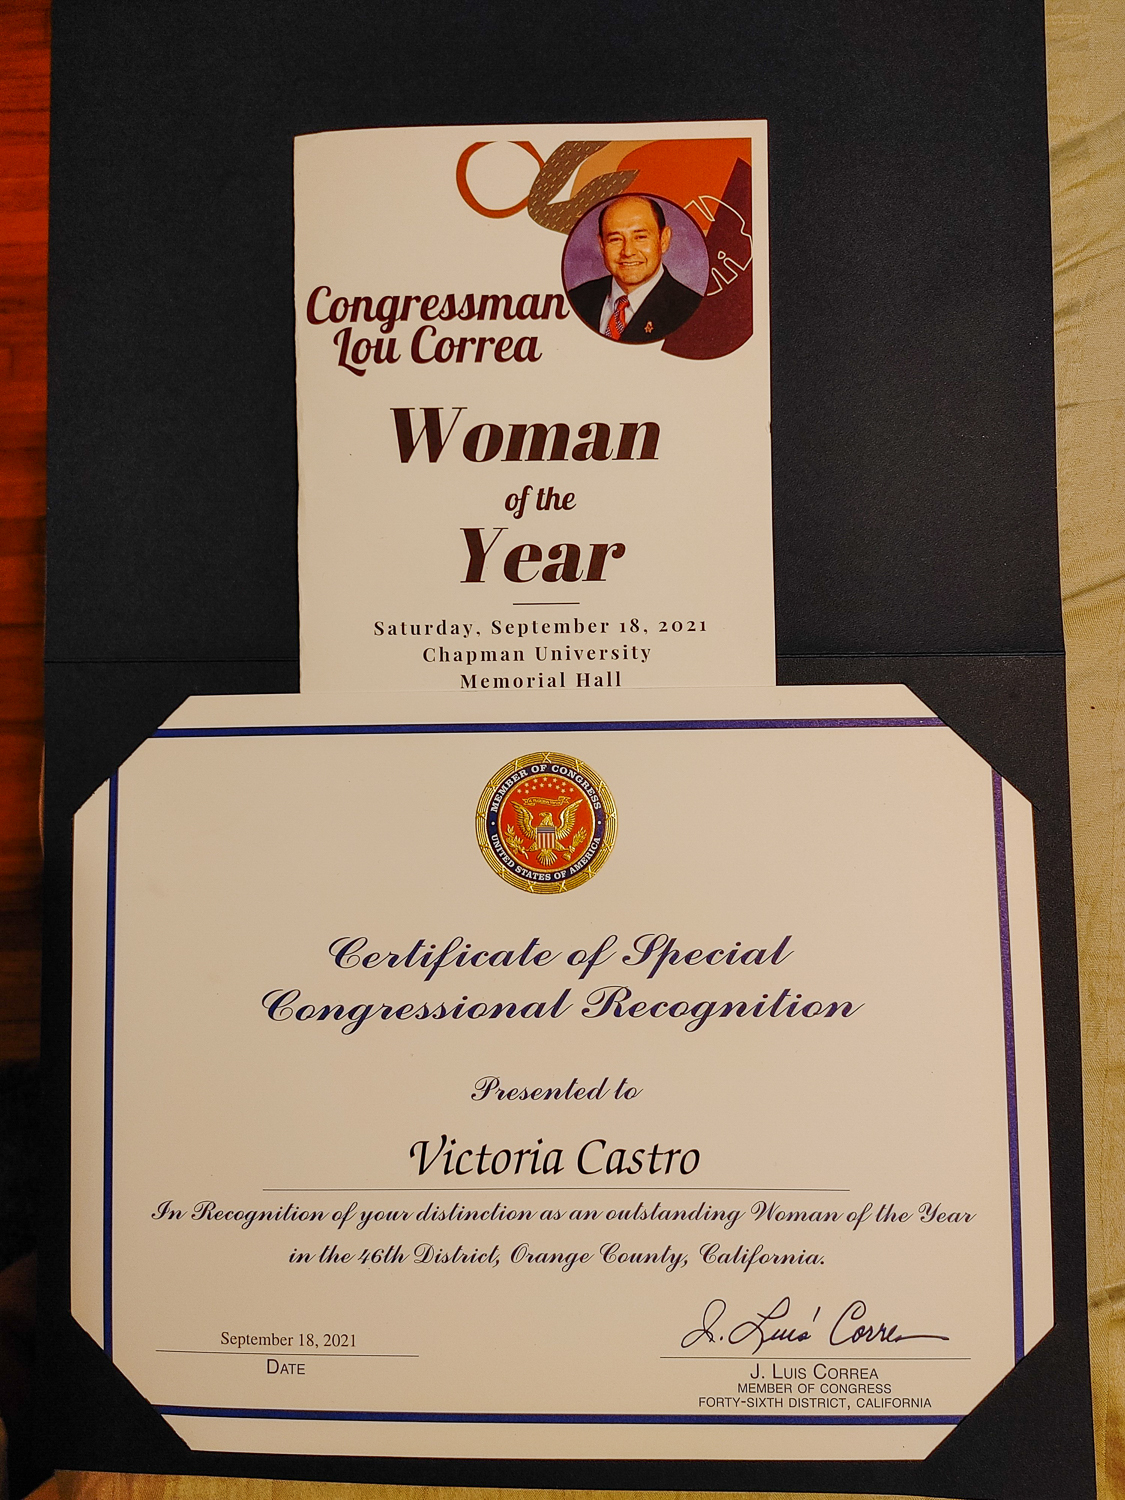 Vicky Castro's award.